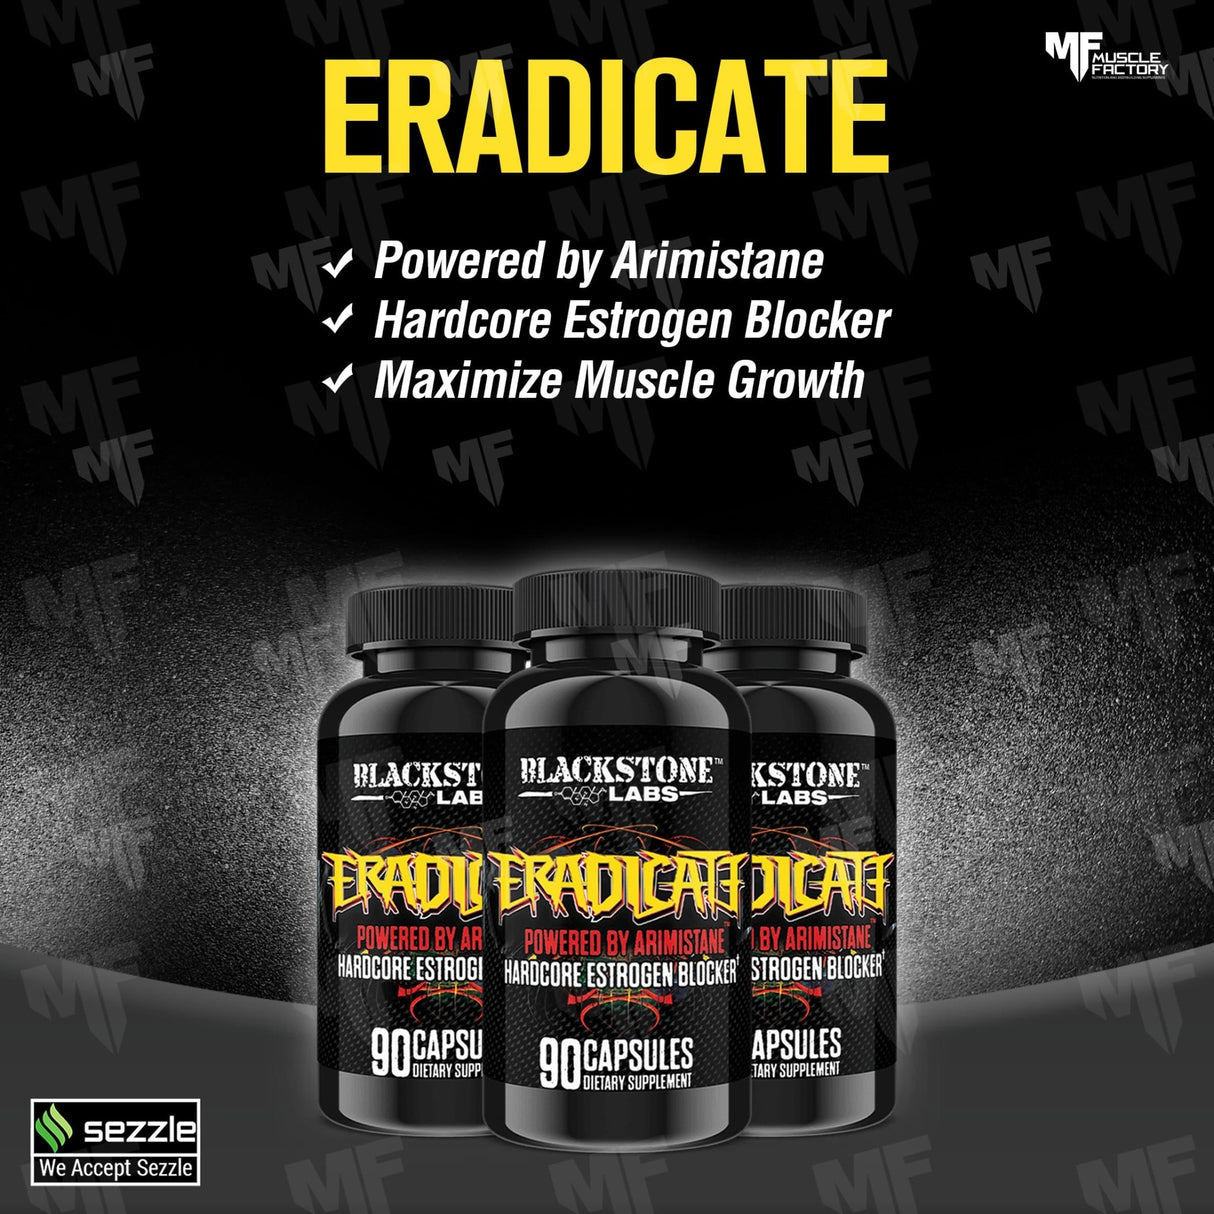 Eradicate - Hardcore Estrogen Blocker - Muscle Factory, LLC